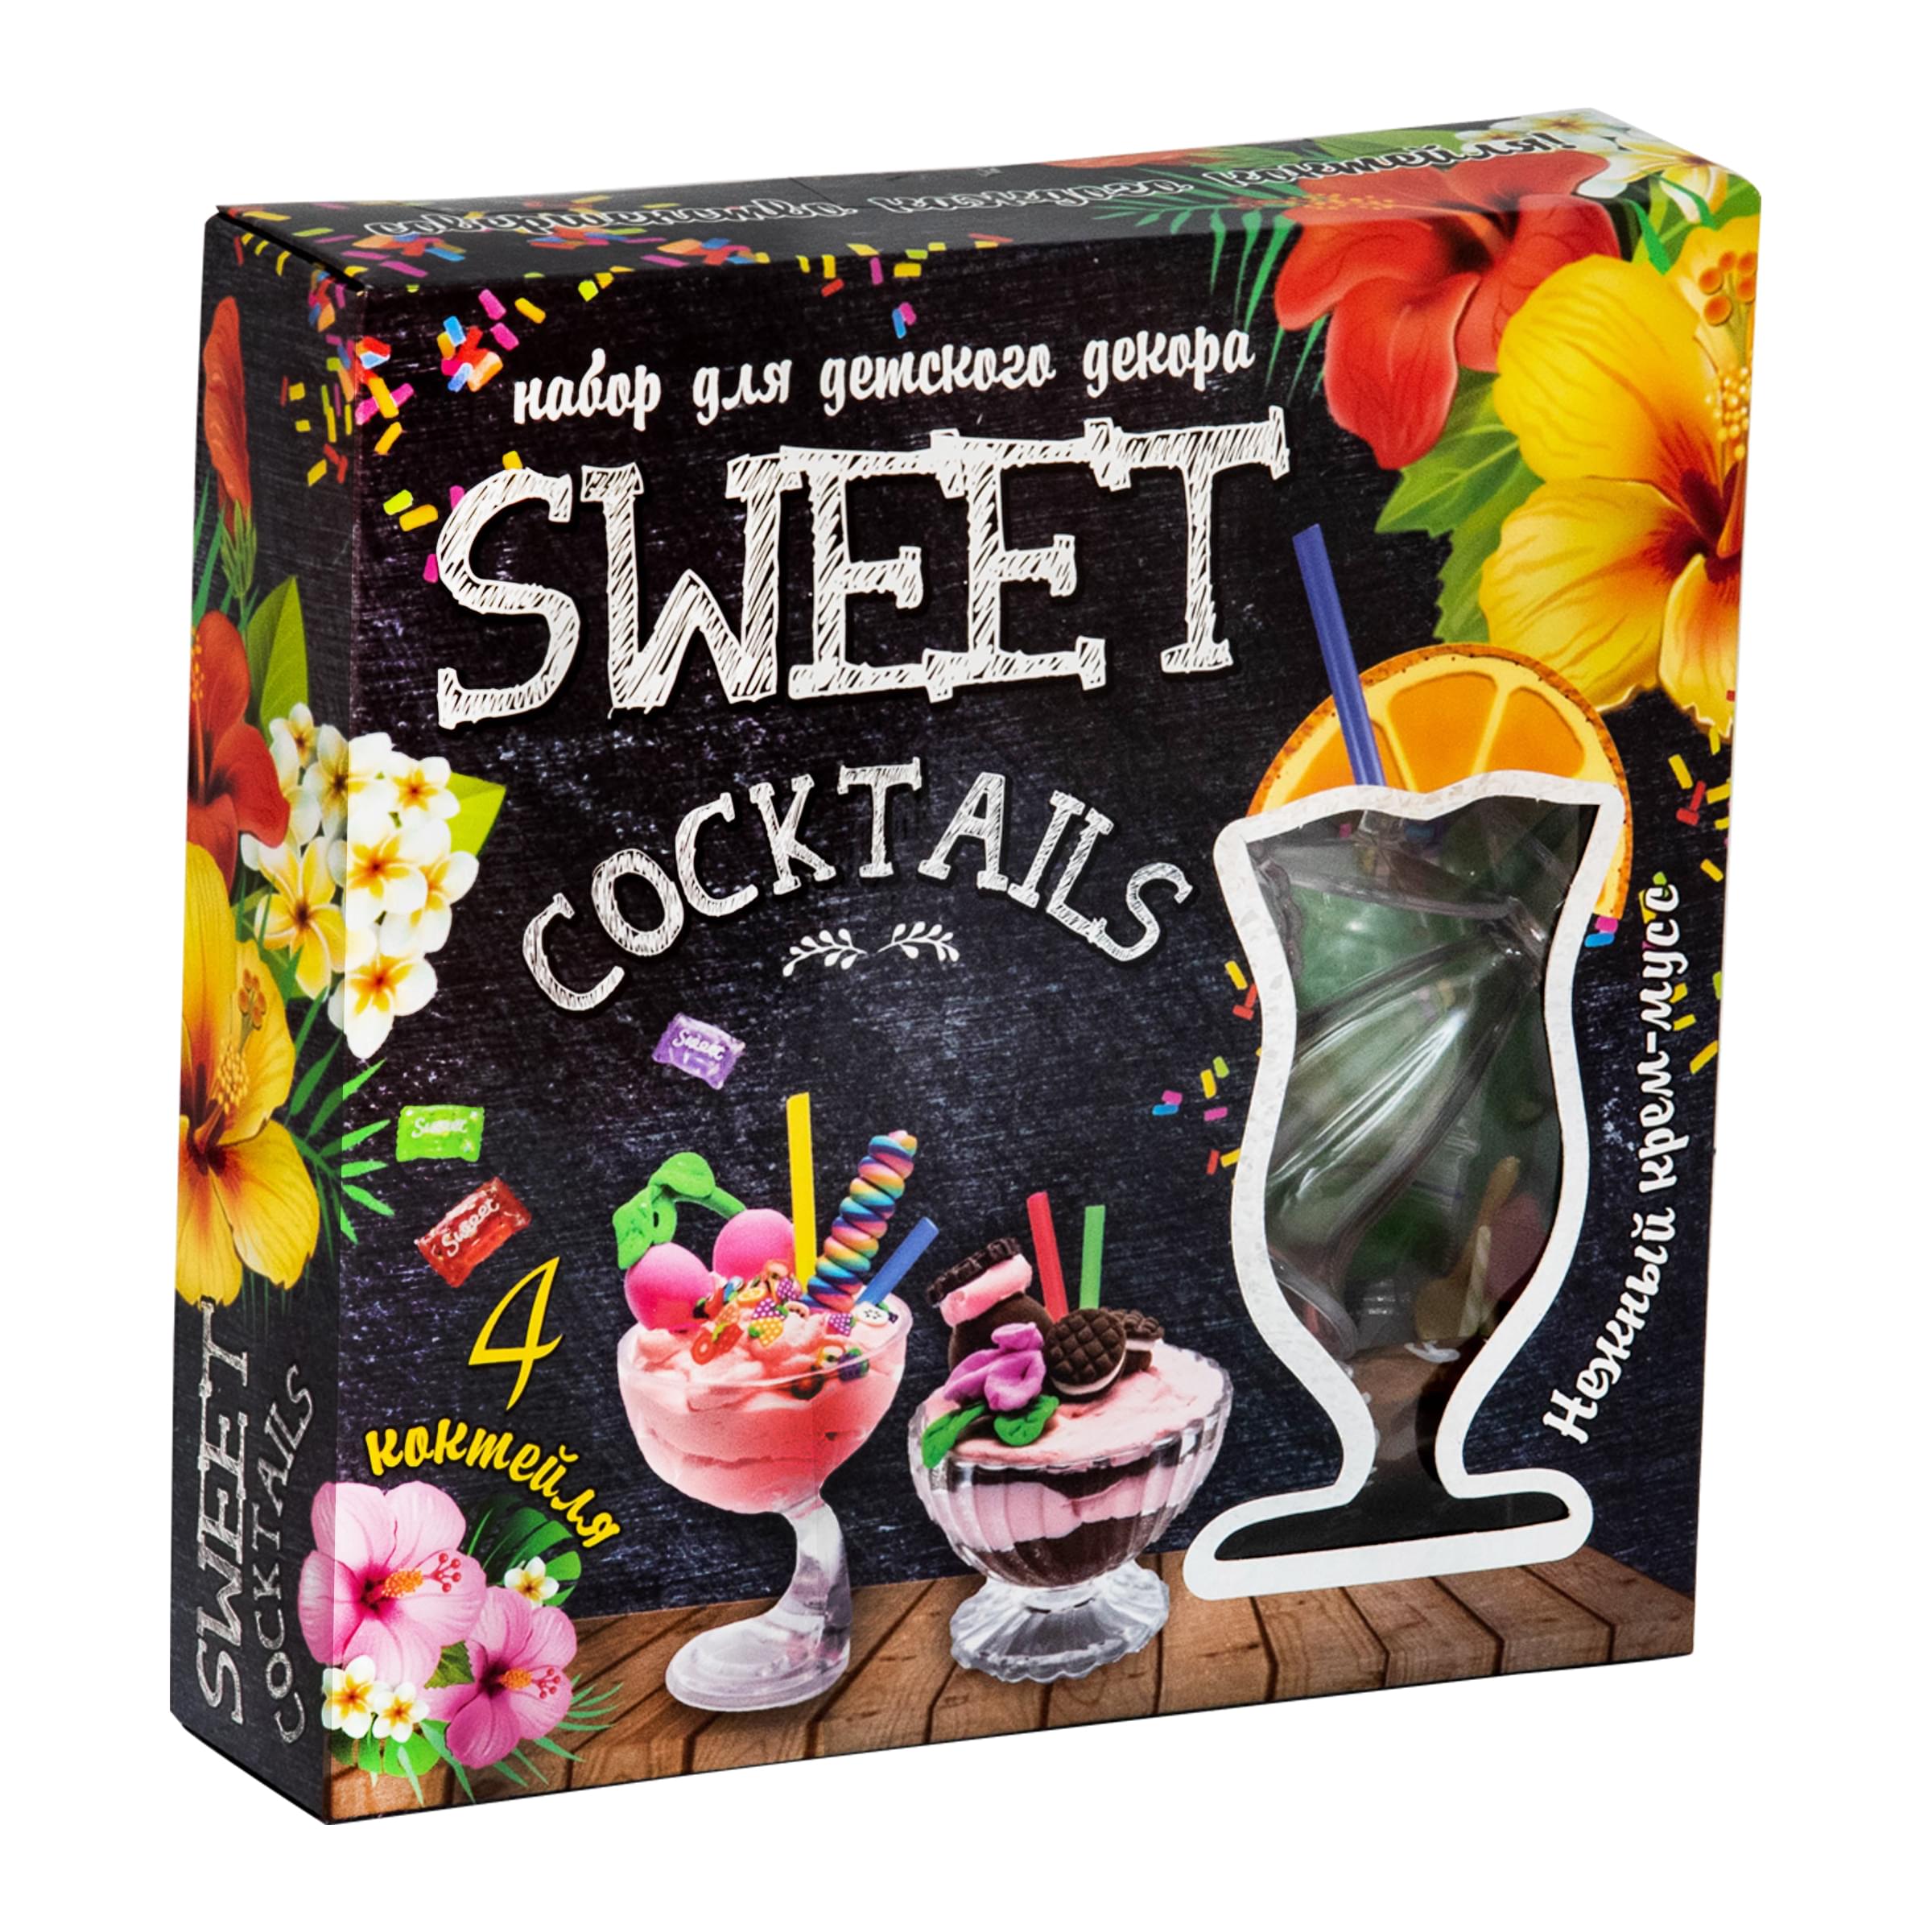 Набор для креативного творчества Strateg Sweet cocktails 14 элементов на русском языке (71847)